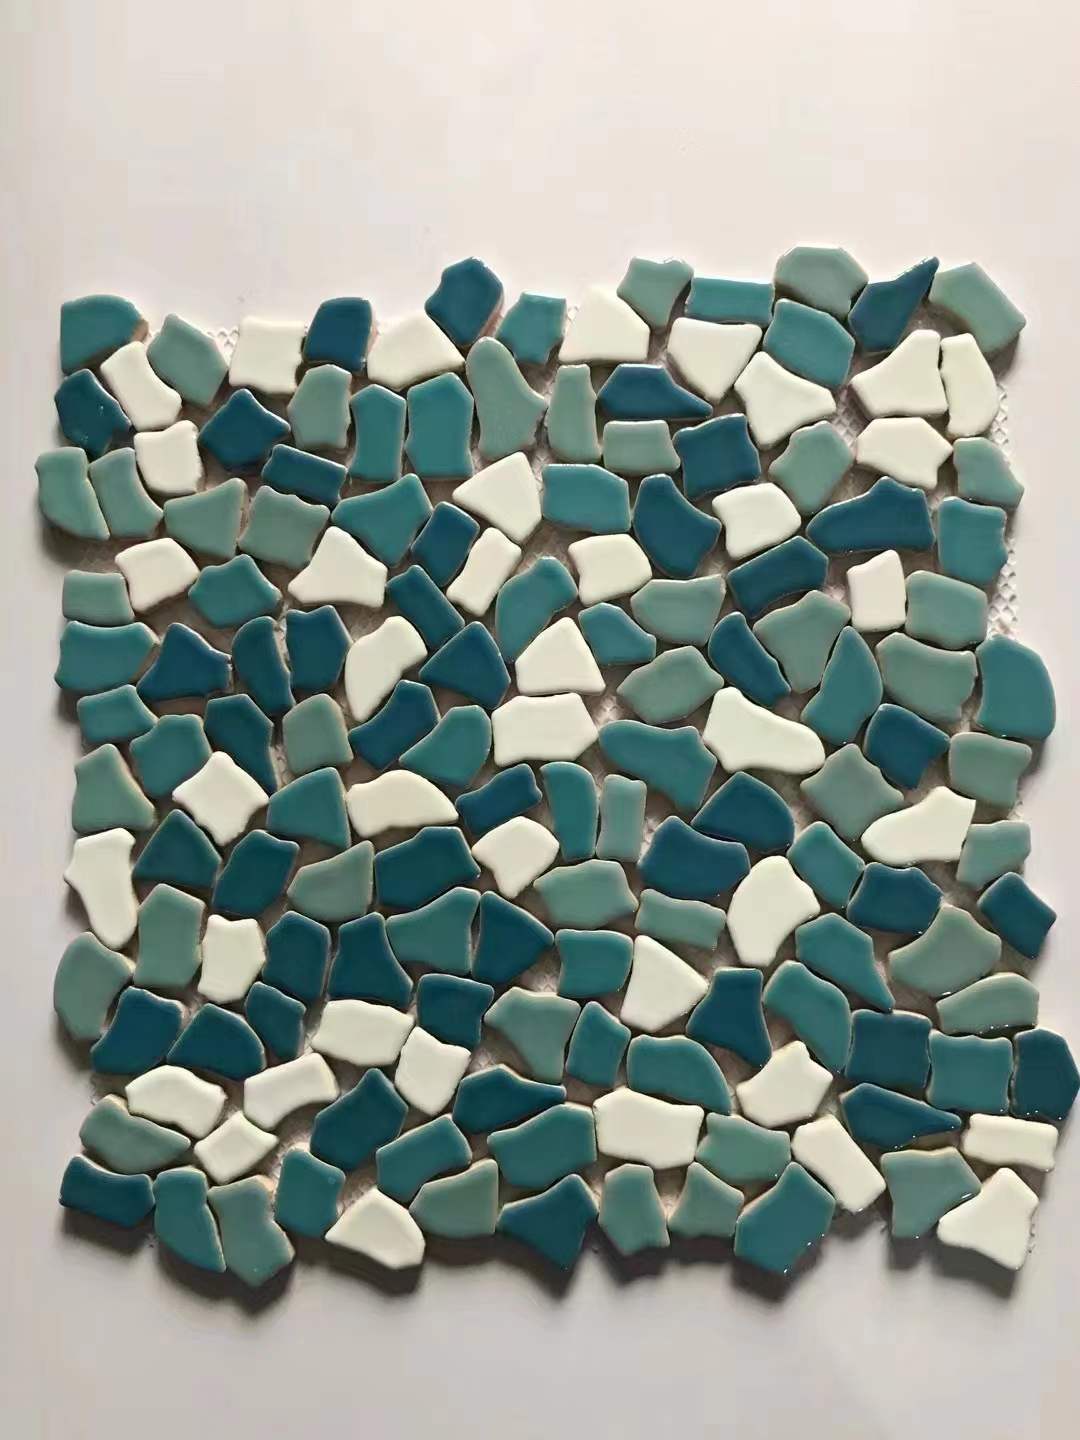 Colorful Pebble Mosaic Tile